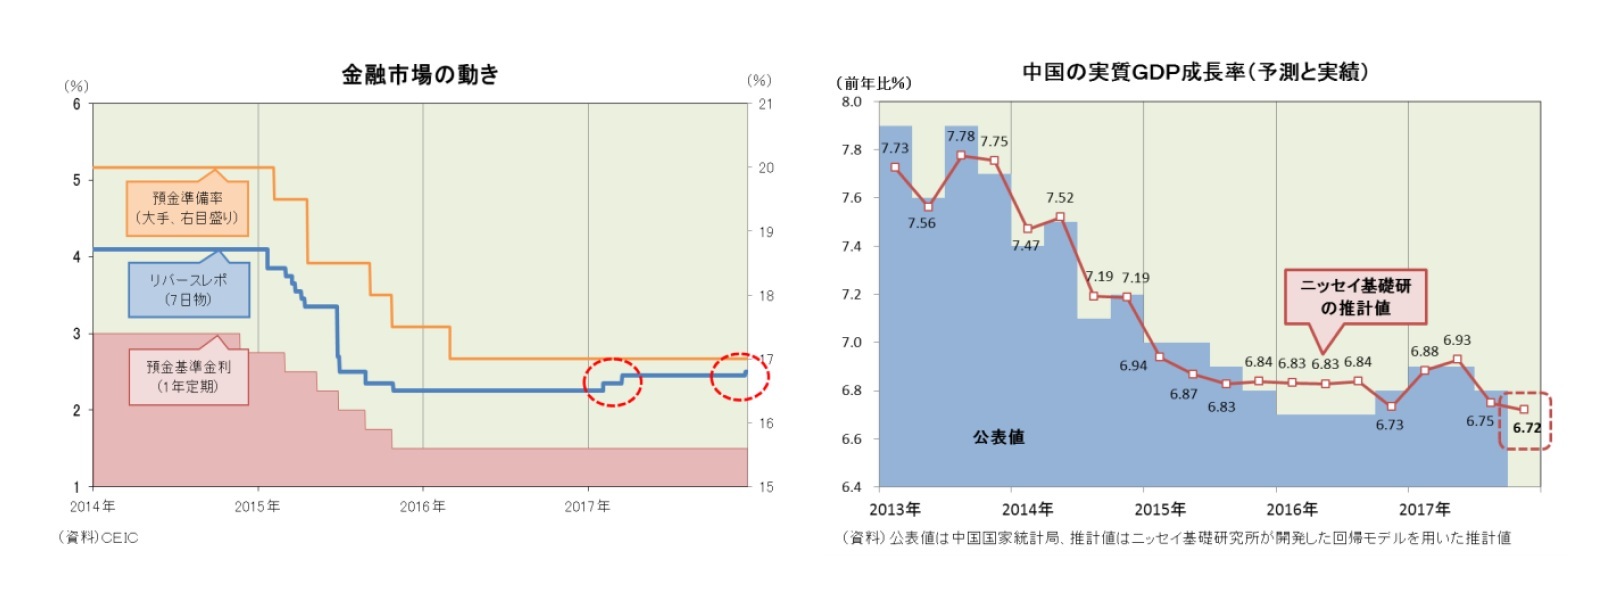 金融市場の動き/中国の実質GDP成長率(予測と実績)